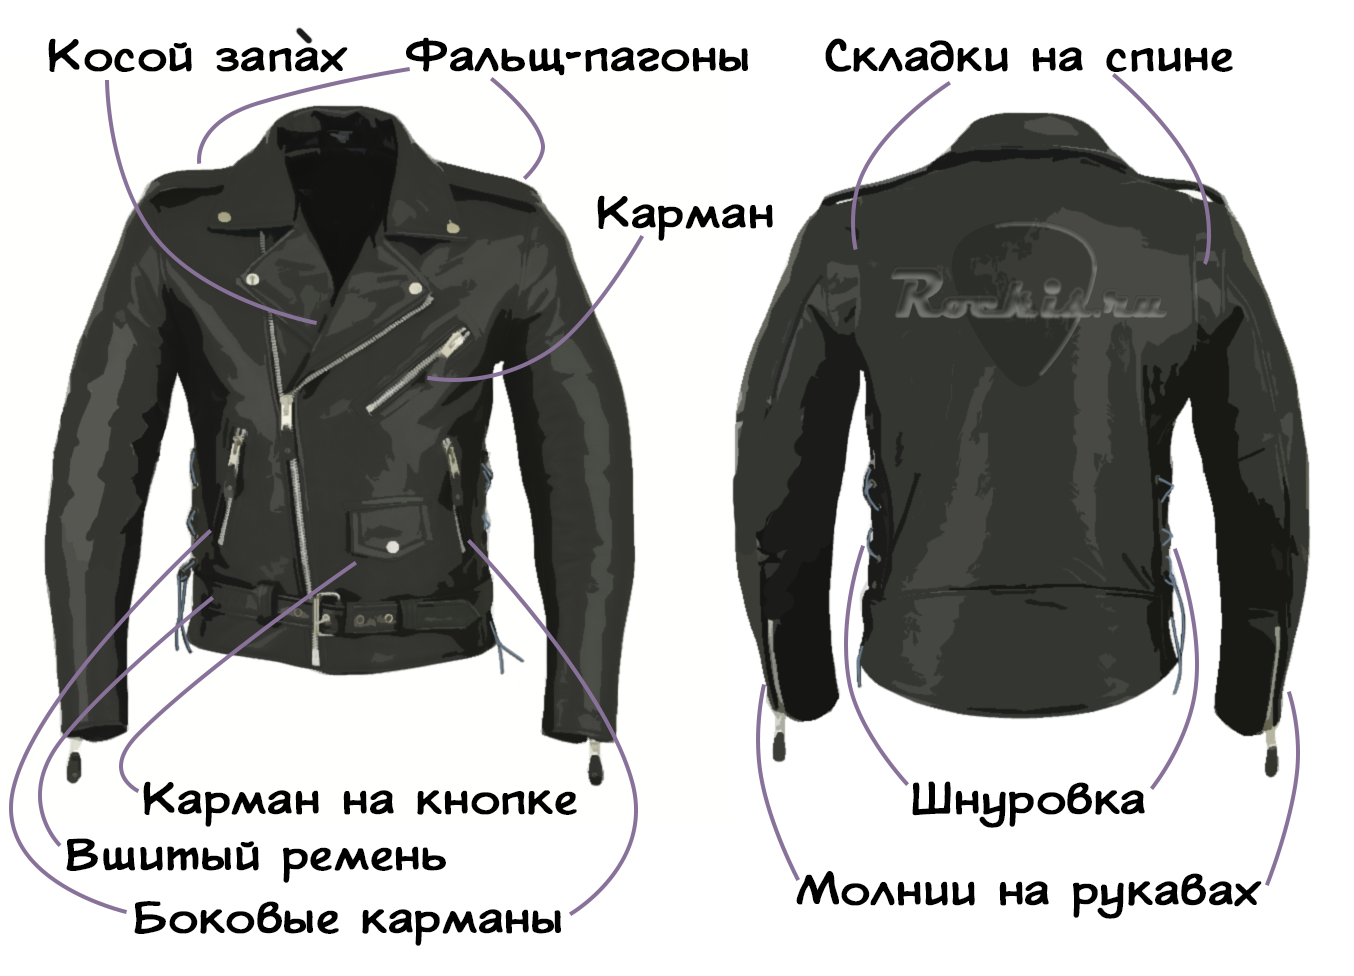 Стильная куртка косуха 2021-2022 в трендовых женских образах: фото идеи, новинки сезона